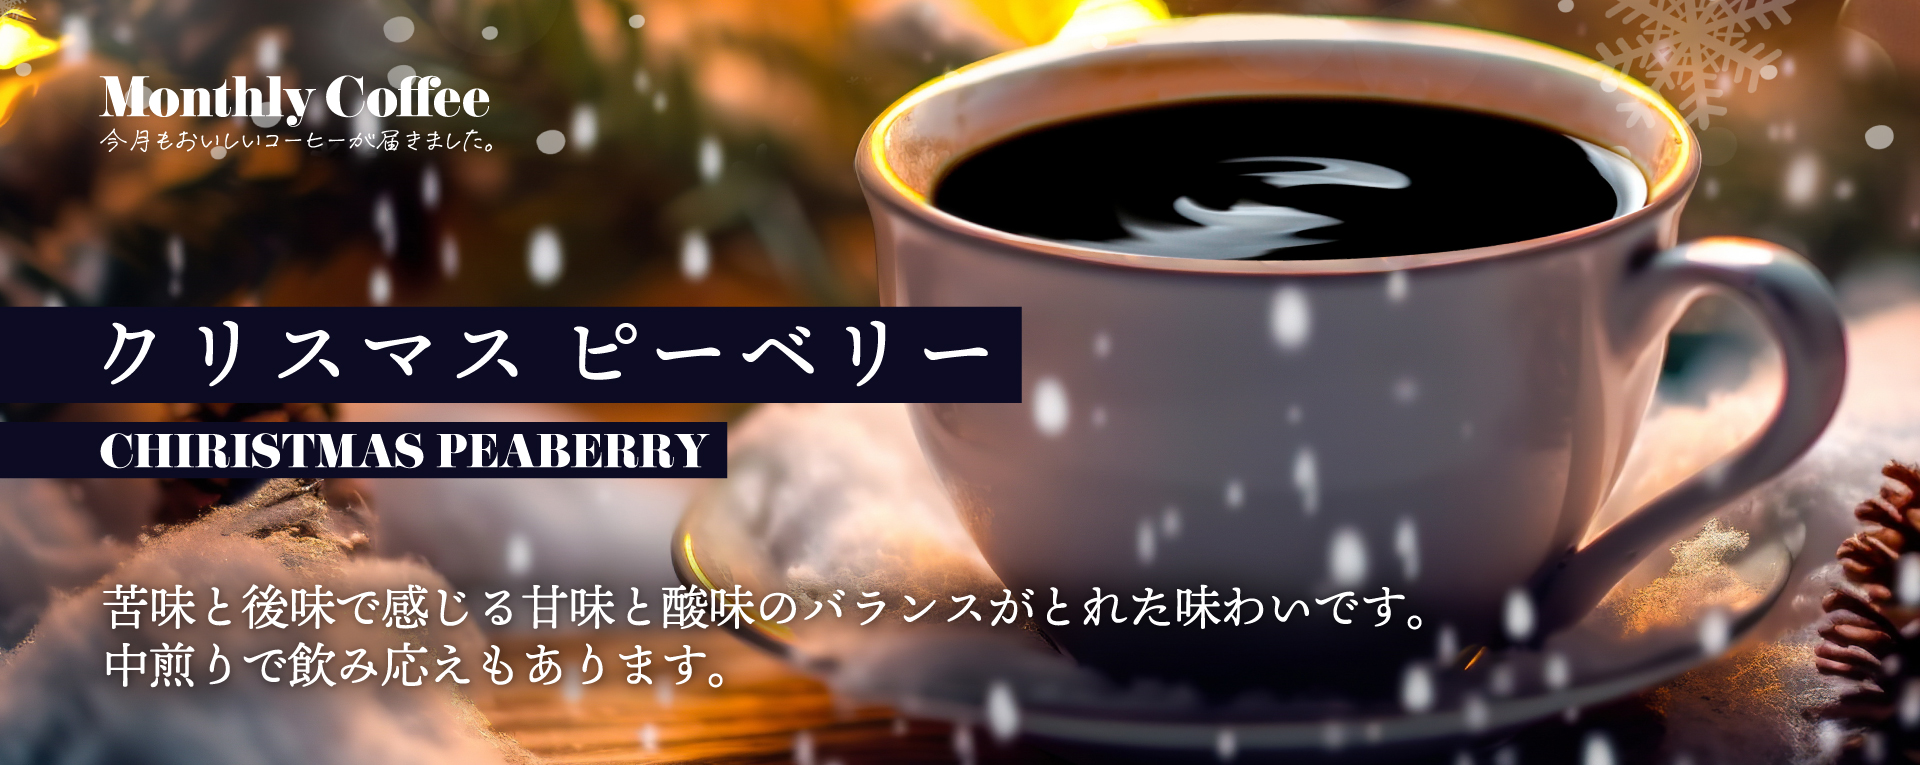 マンスリーコーヒー 12月「クリスマスピーベリー」新発売